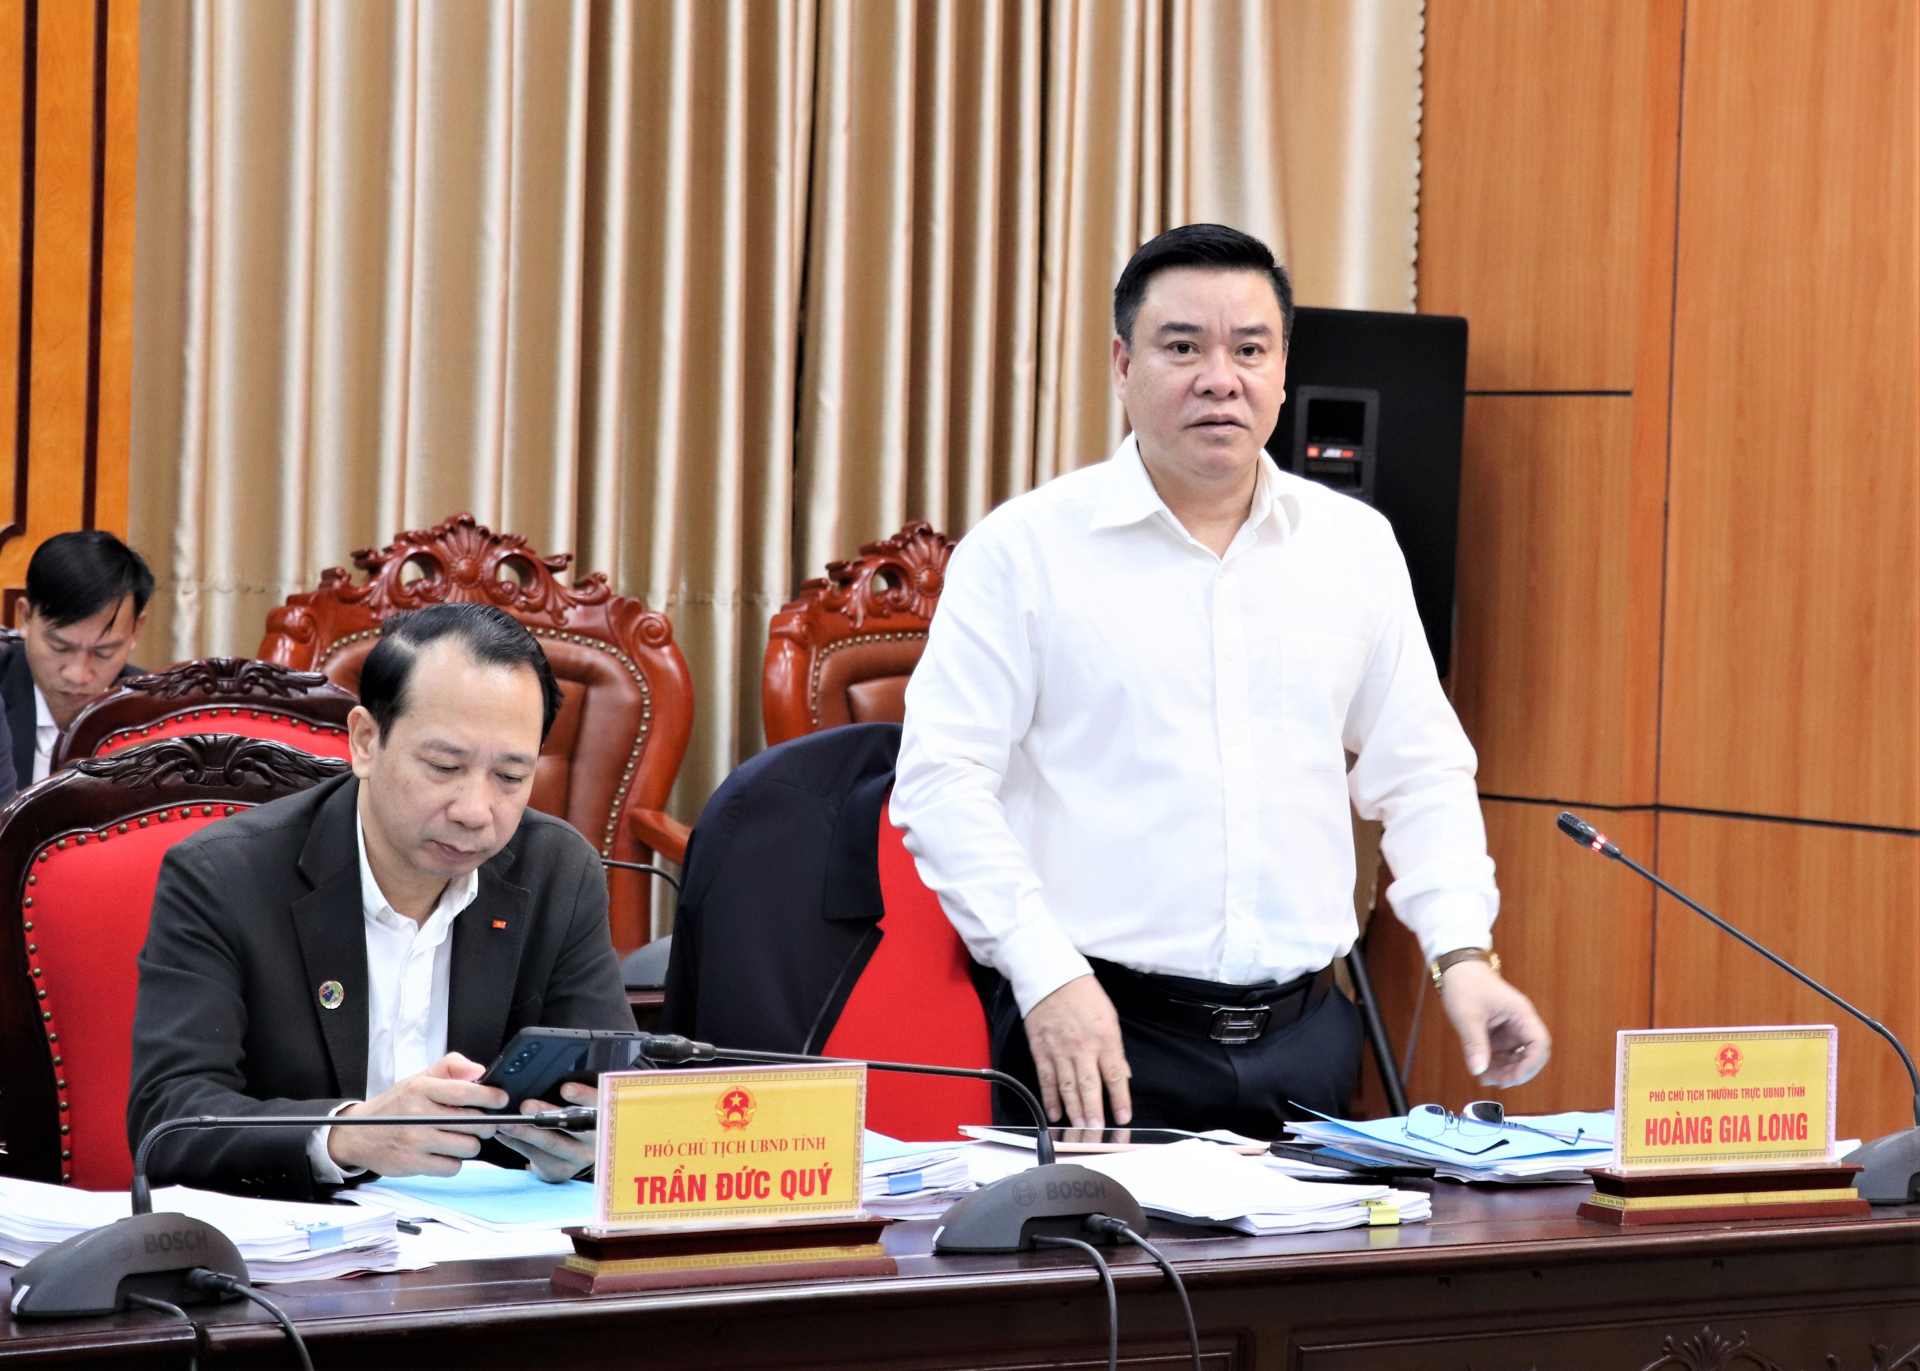 Phó Chủ tịch Thường trực UBND tỉnh Hoàng Gia Long tham gia ý kiến vào Tờ trình dự thảo Quy chế Quản lý kiến trúc đô thị Hà Giang đến năm 2035.